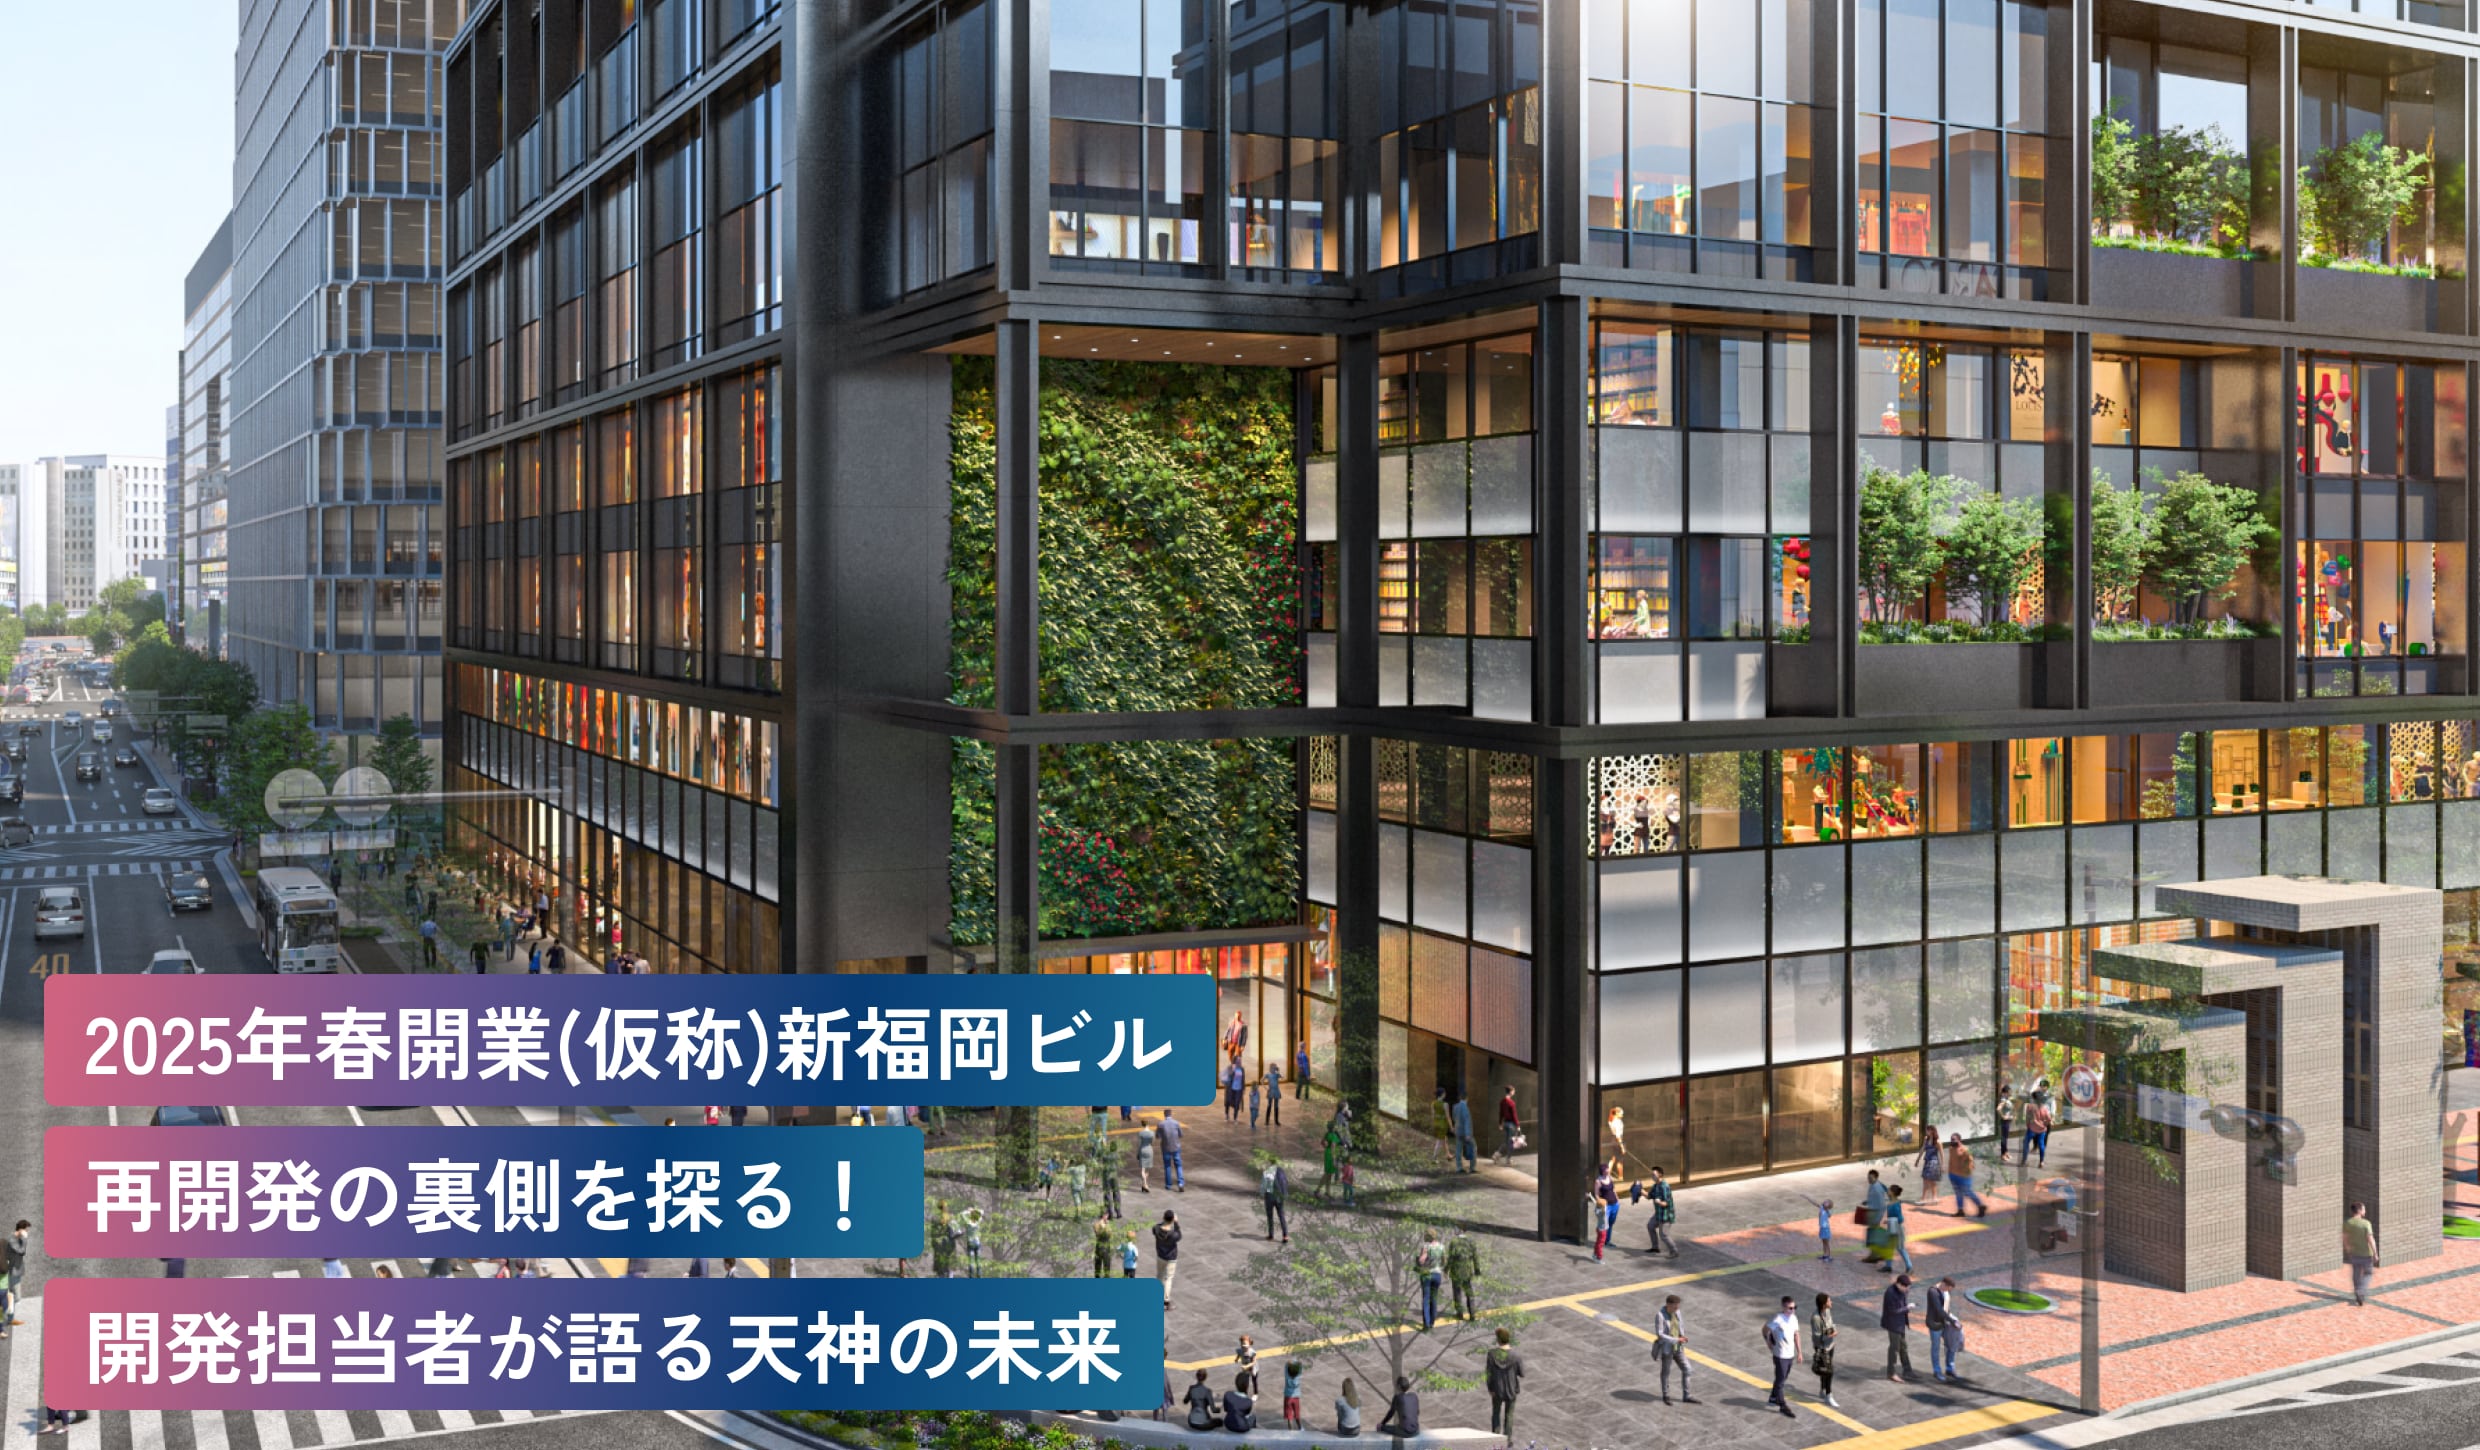 2025年春開業(仮称)新福岡
ビル再開発の裏側を探る！
開発担当者が語る天神の未来